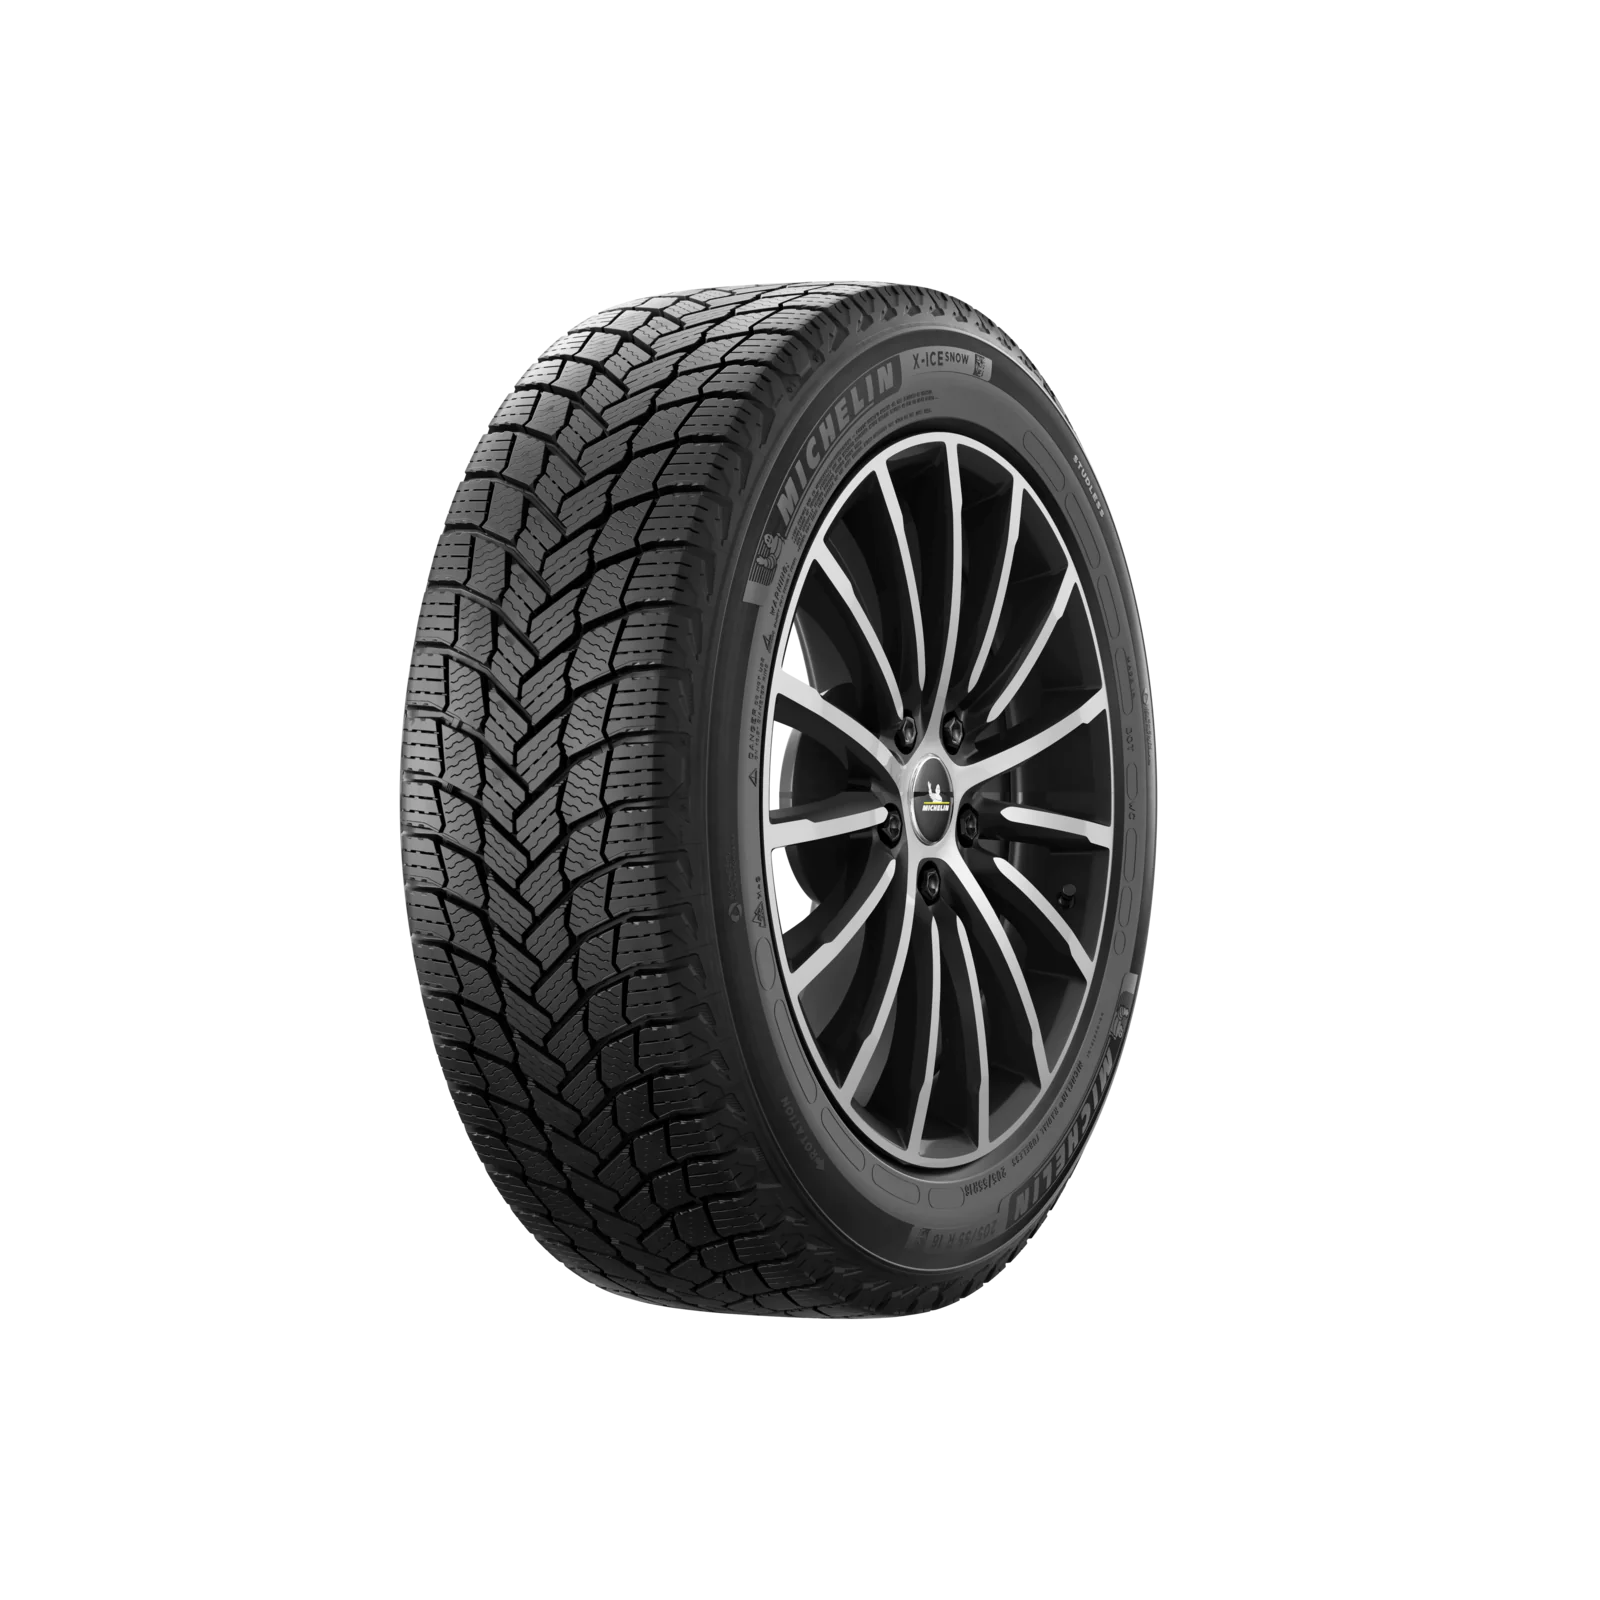 Michelin Michelin 255/60 R18 112T X-ICE SNOW SUV pneumatici nuovi Invernale 